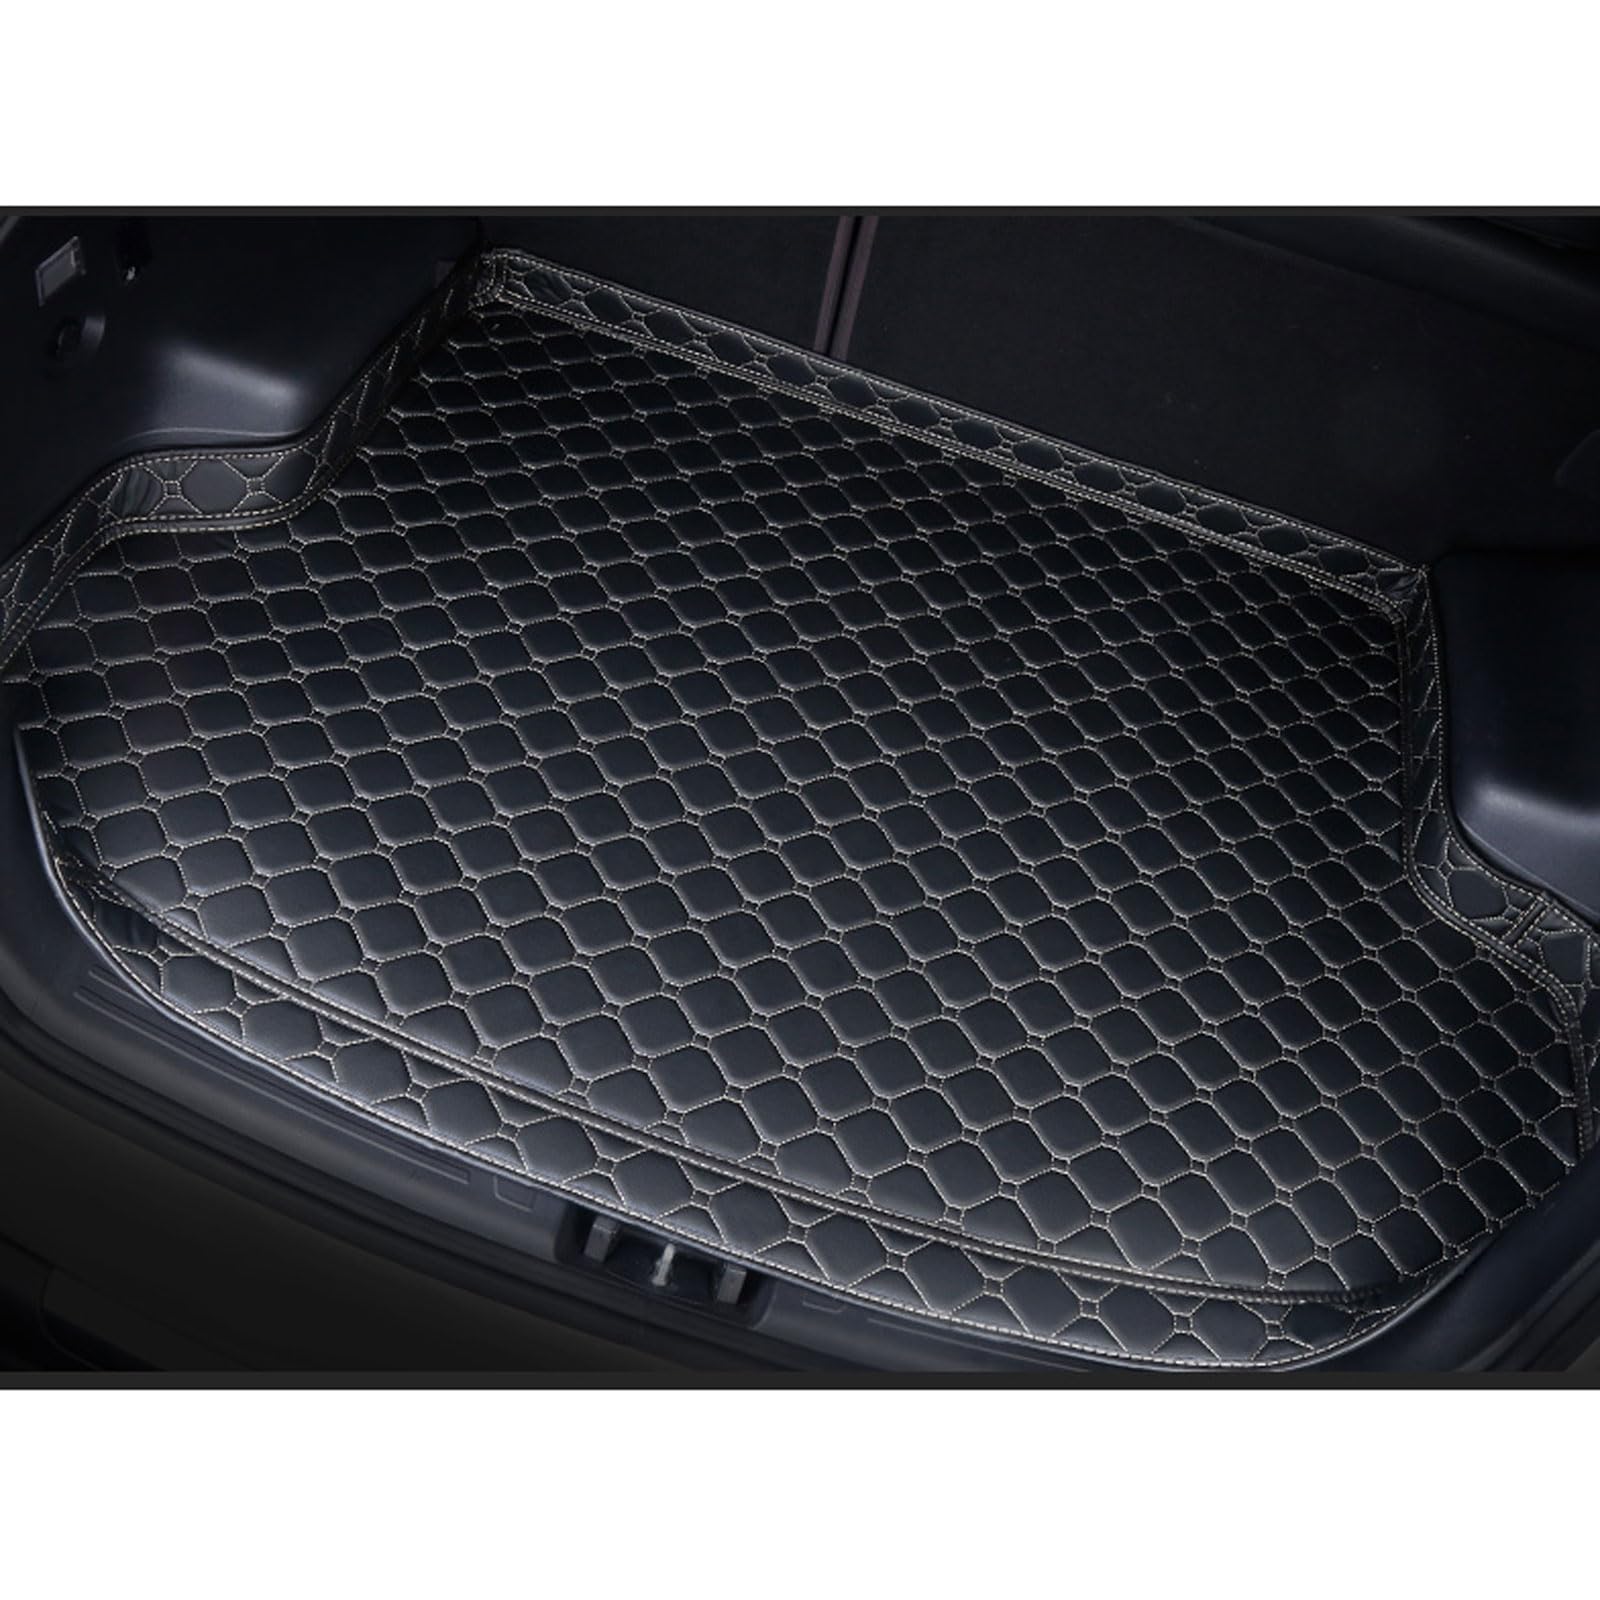 Auto Kofferraum Schutzmatte für Audi A4 B6 Travel 2000-2009, Leder Kofferraummatten rutschfest Wasserdicht Kofferraumwanne Innenraum ZubehöR,Black-Beige-High Side von Huanzhi